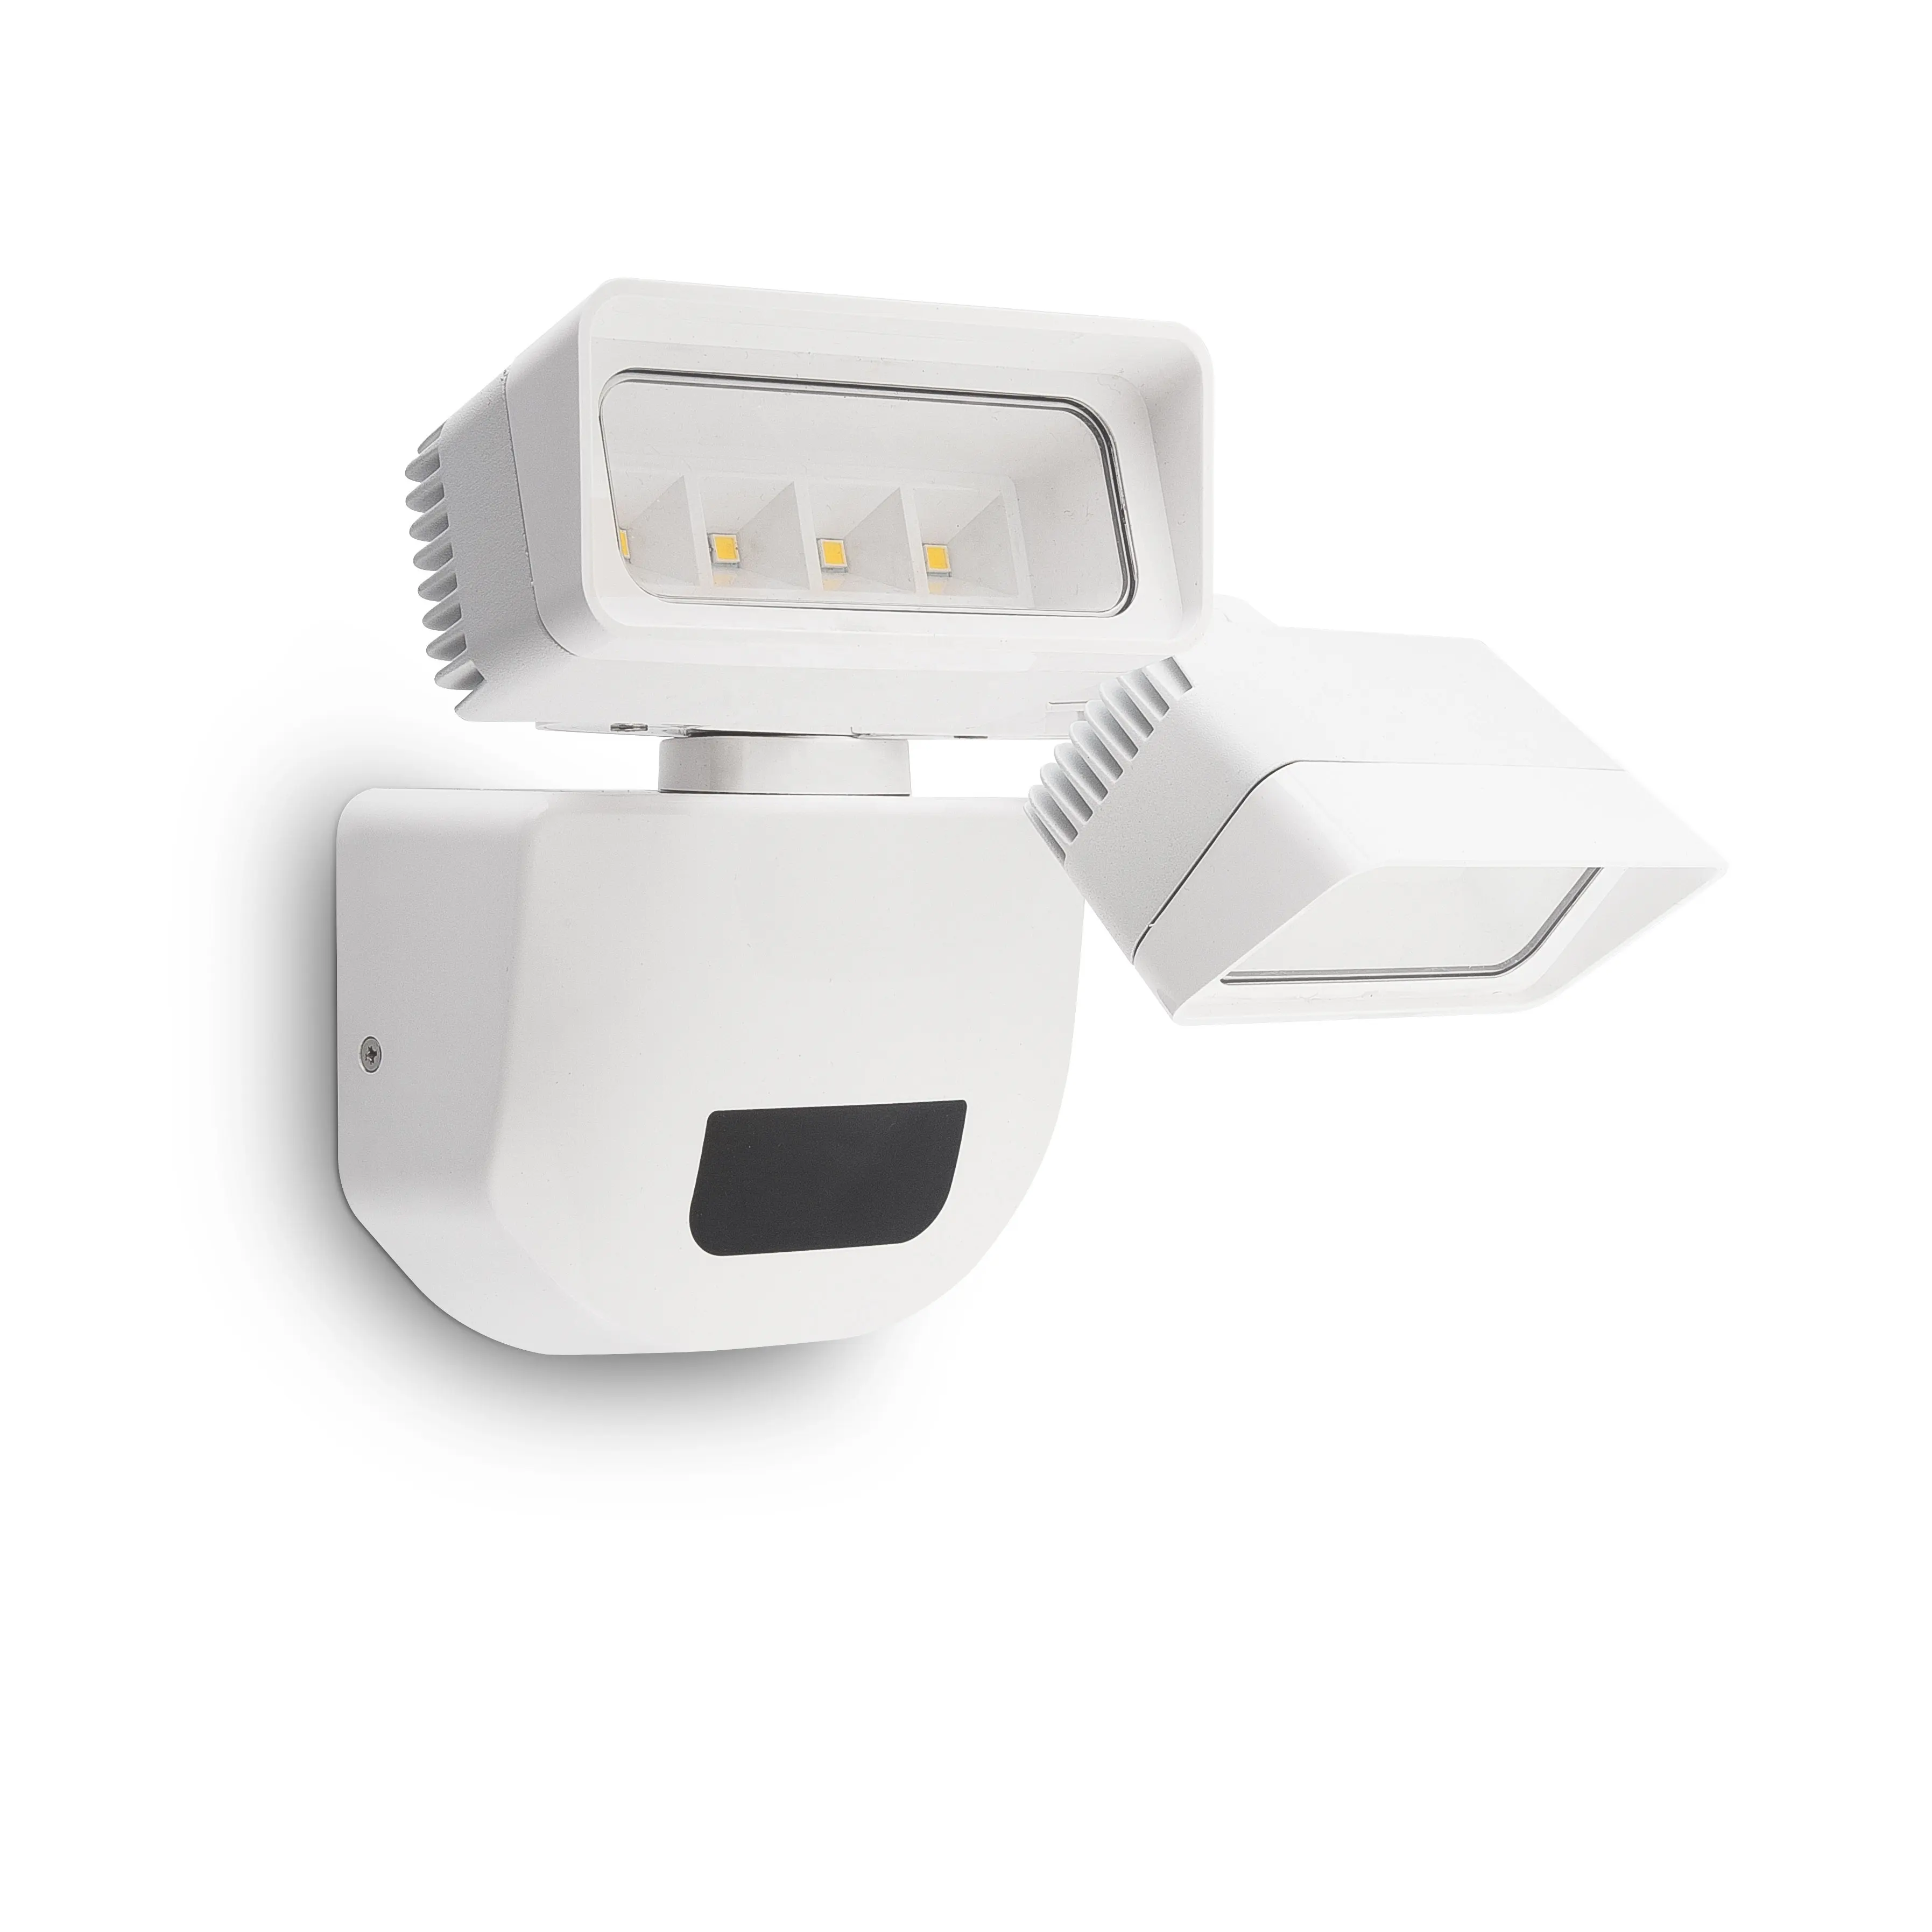 PW1804 çift kafa 30W parlak beyaz açık LED güvenlik projektör hareket aktif sensörü duvar lambası